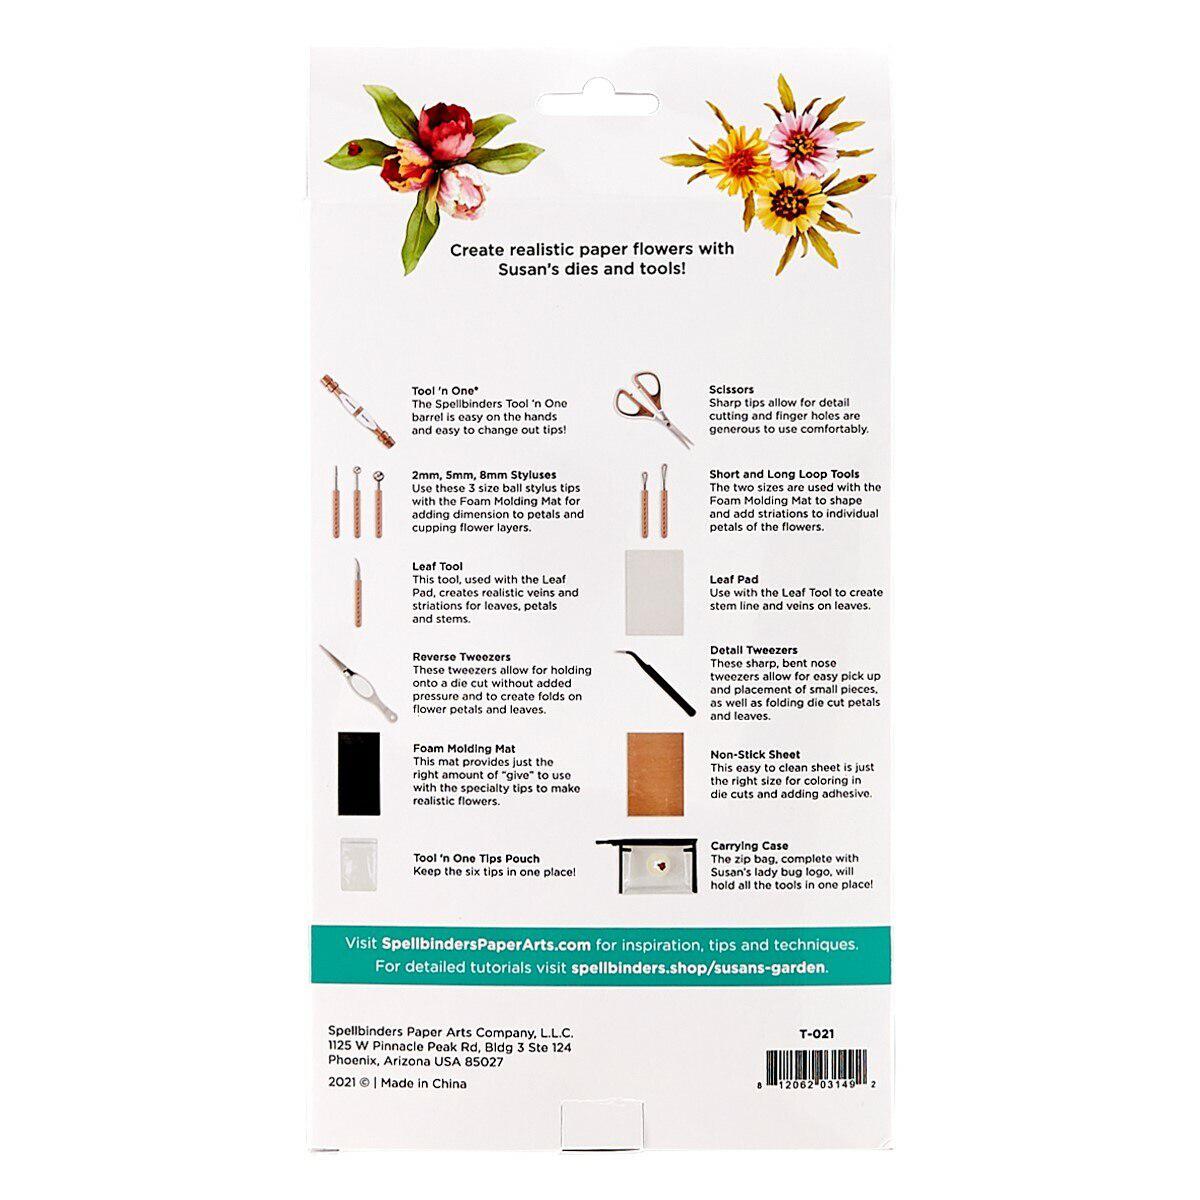 Spellbinders - Susan&#39;s Garden Ultimate Tool Kit-ScrapbookPal